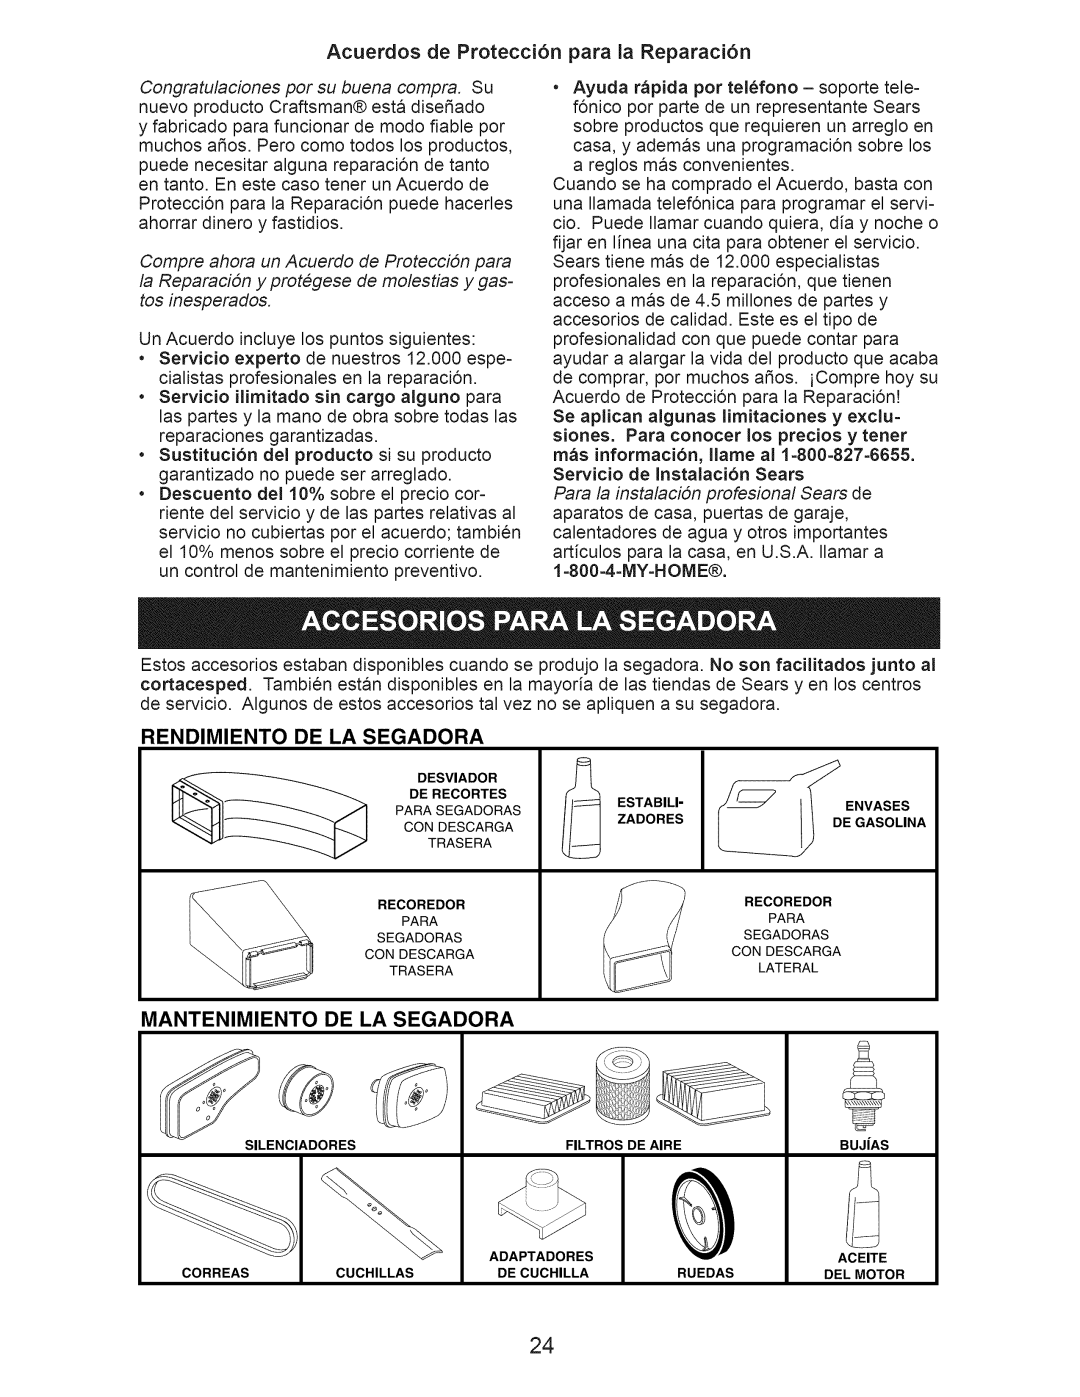 Craftsman 917.374060 Acuerdos de Protecci6n para la Reparaci6n, Rendimiento De La Segadora, Mantenimiento De La Segadora 